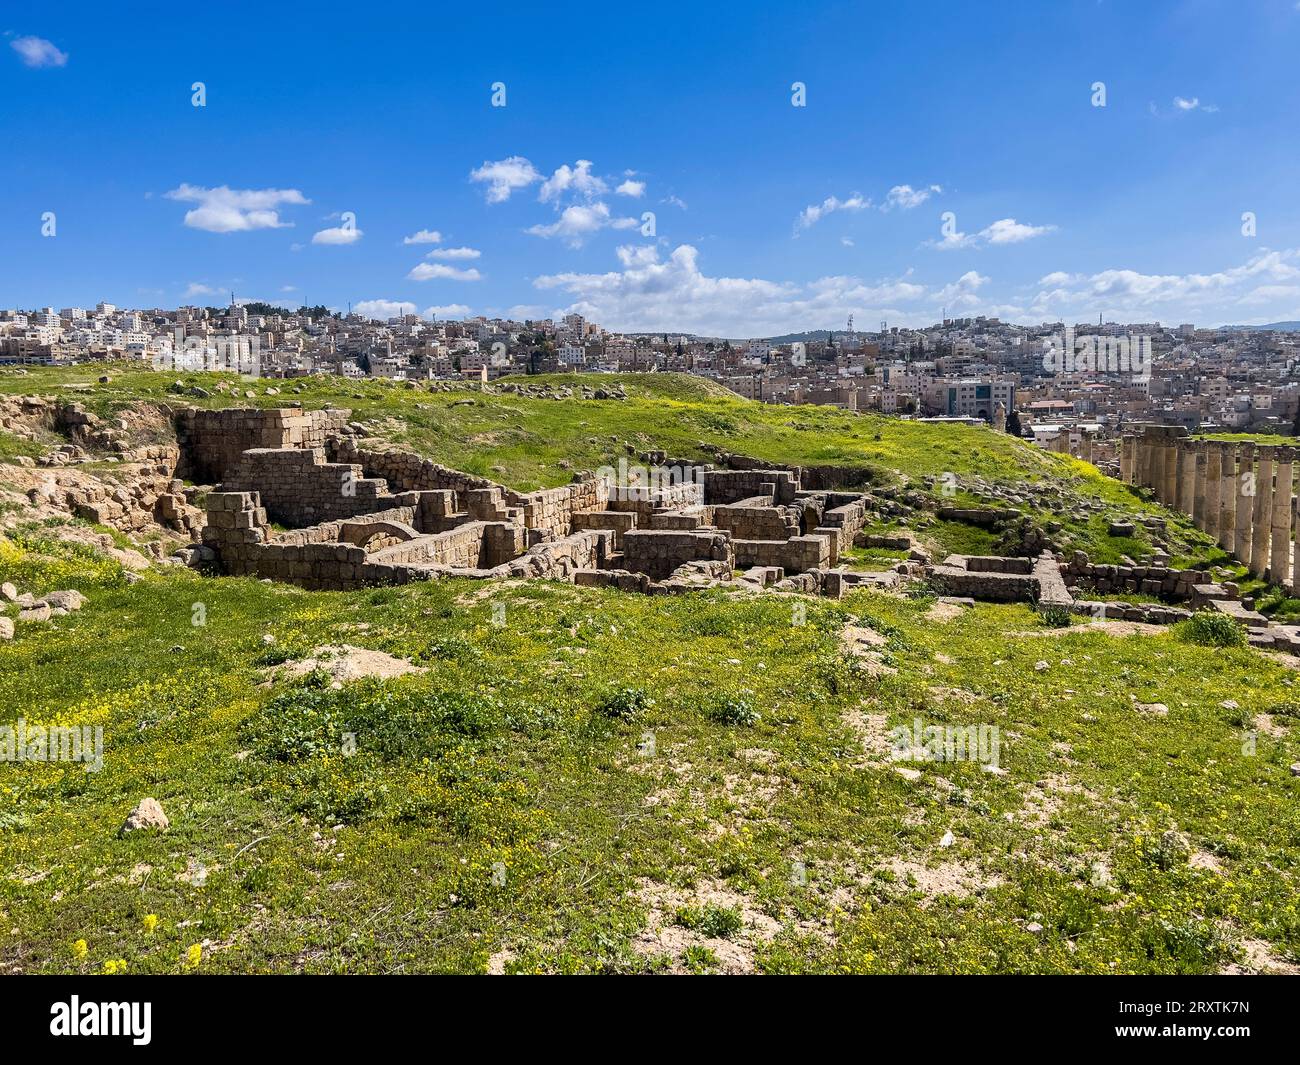 L'ancienne ville de Jerash, qui aurait été fondée en 331 av. J.-C. par Alexandre le Grand, Jerash, Jordanie, Moyen-Orient Banque D'Images